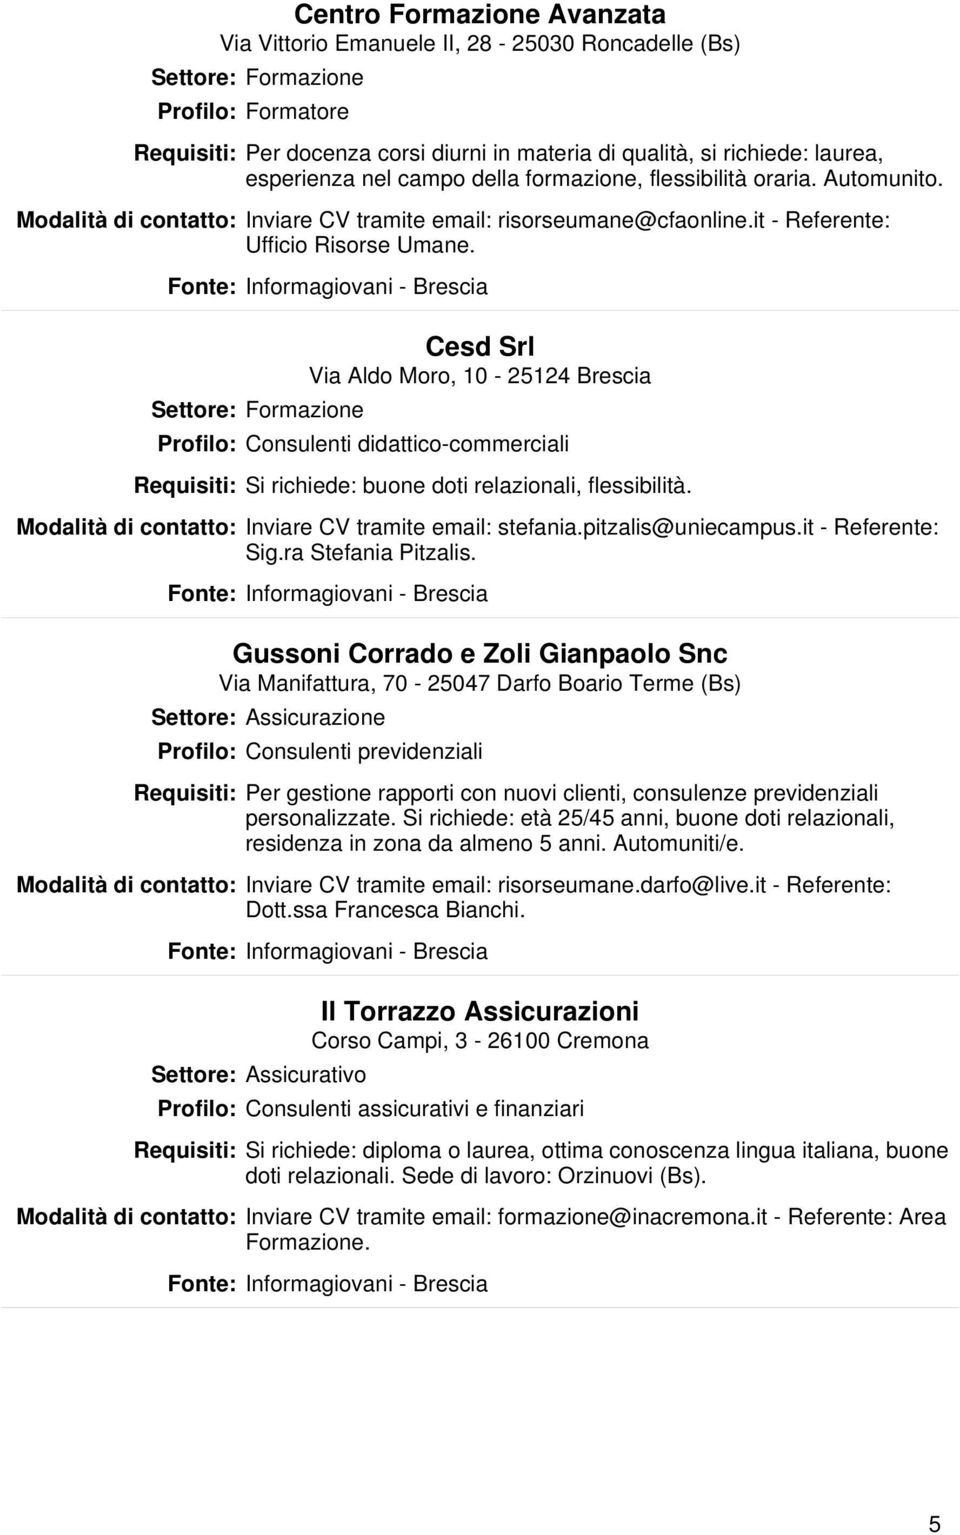 Settore: Formazione Cesd Srl Via Aldo Moro, 10-25124 Brescia Profilo: Consulenti didattico-commerciali Si richiede: buone doti relazionali, flessibilità.